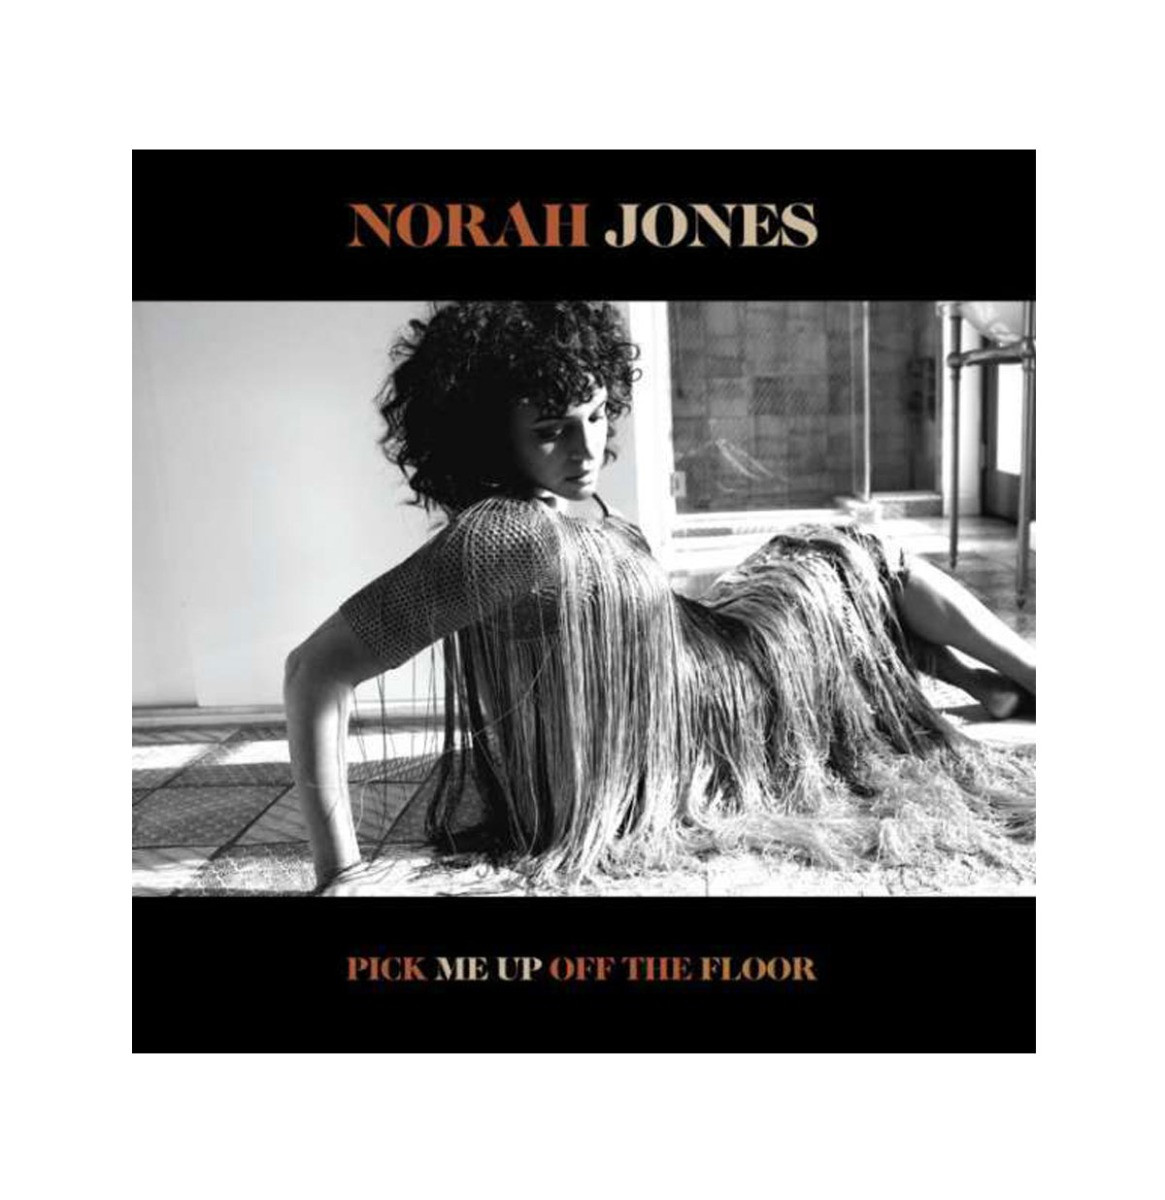 Norah Jones - Pick Me Up Off The Floor LP